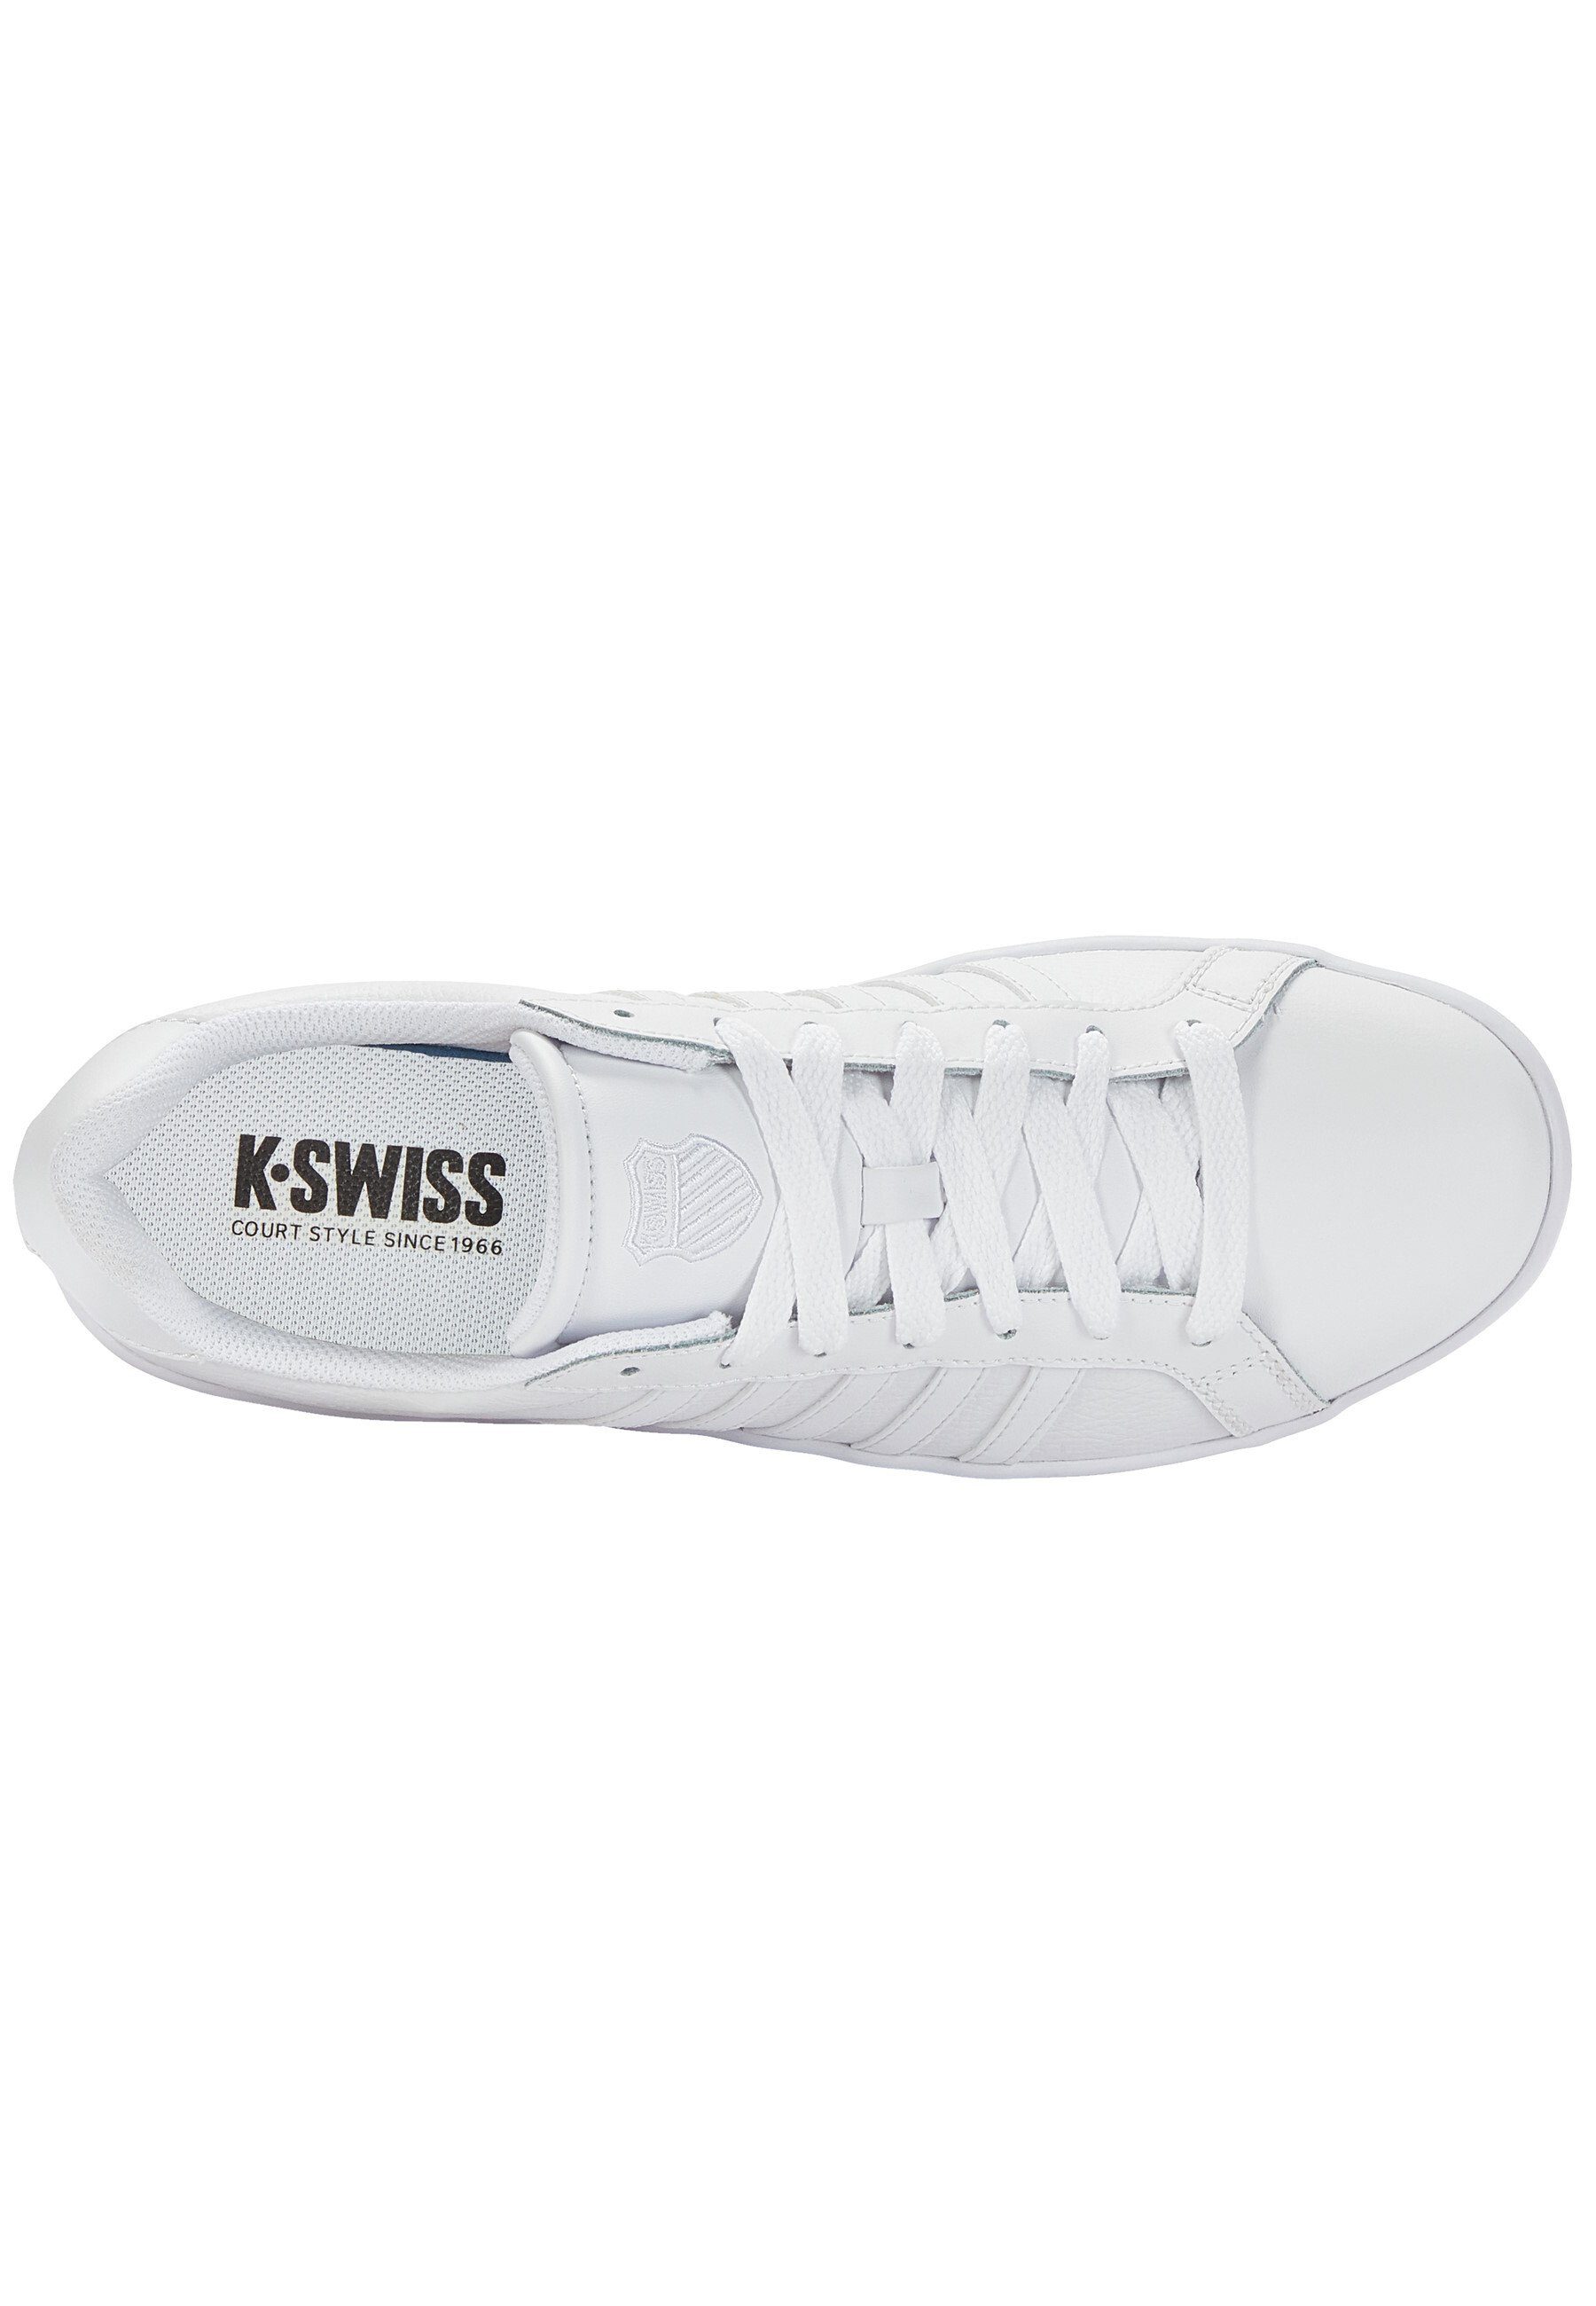 COURT Sneaker K-Swiss Weiß mit (11405031) Schnürung, TIEBREAK Sneaker Schuhe